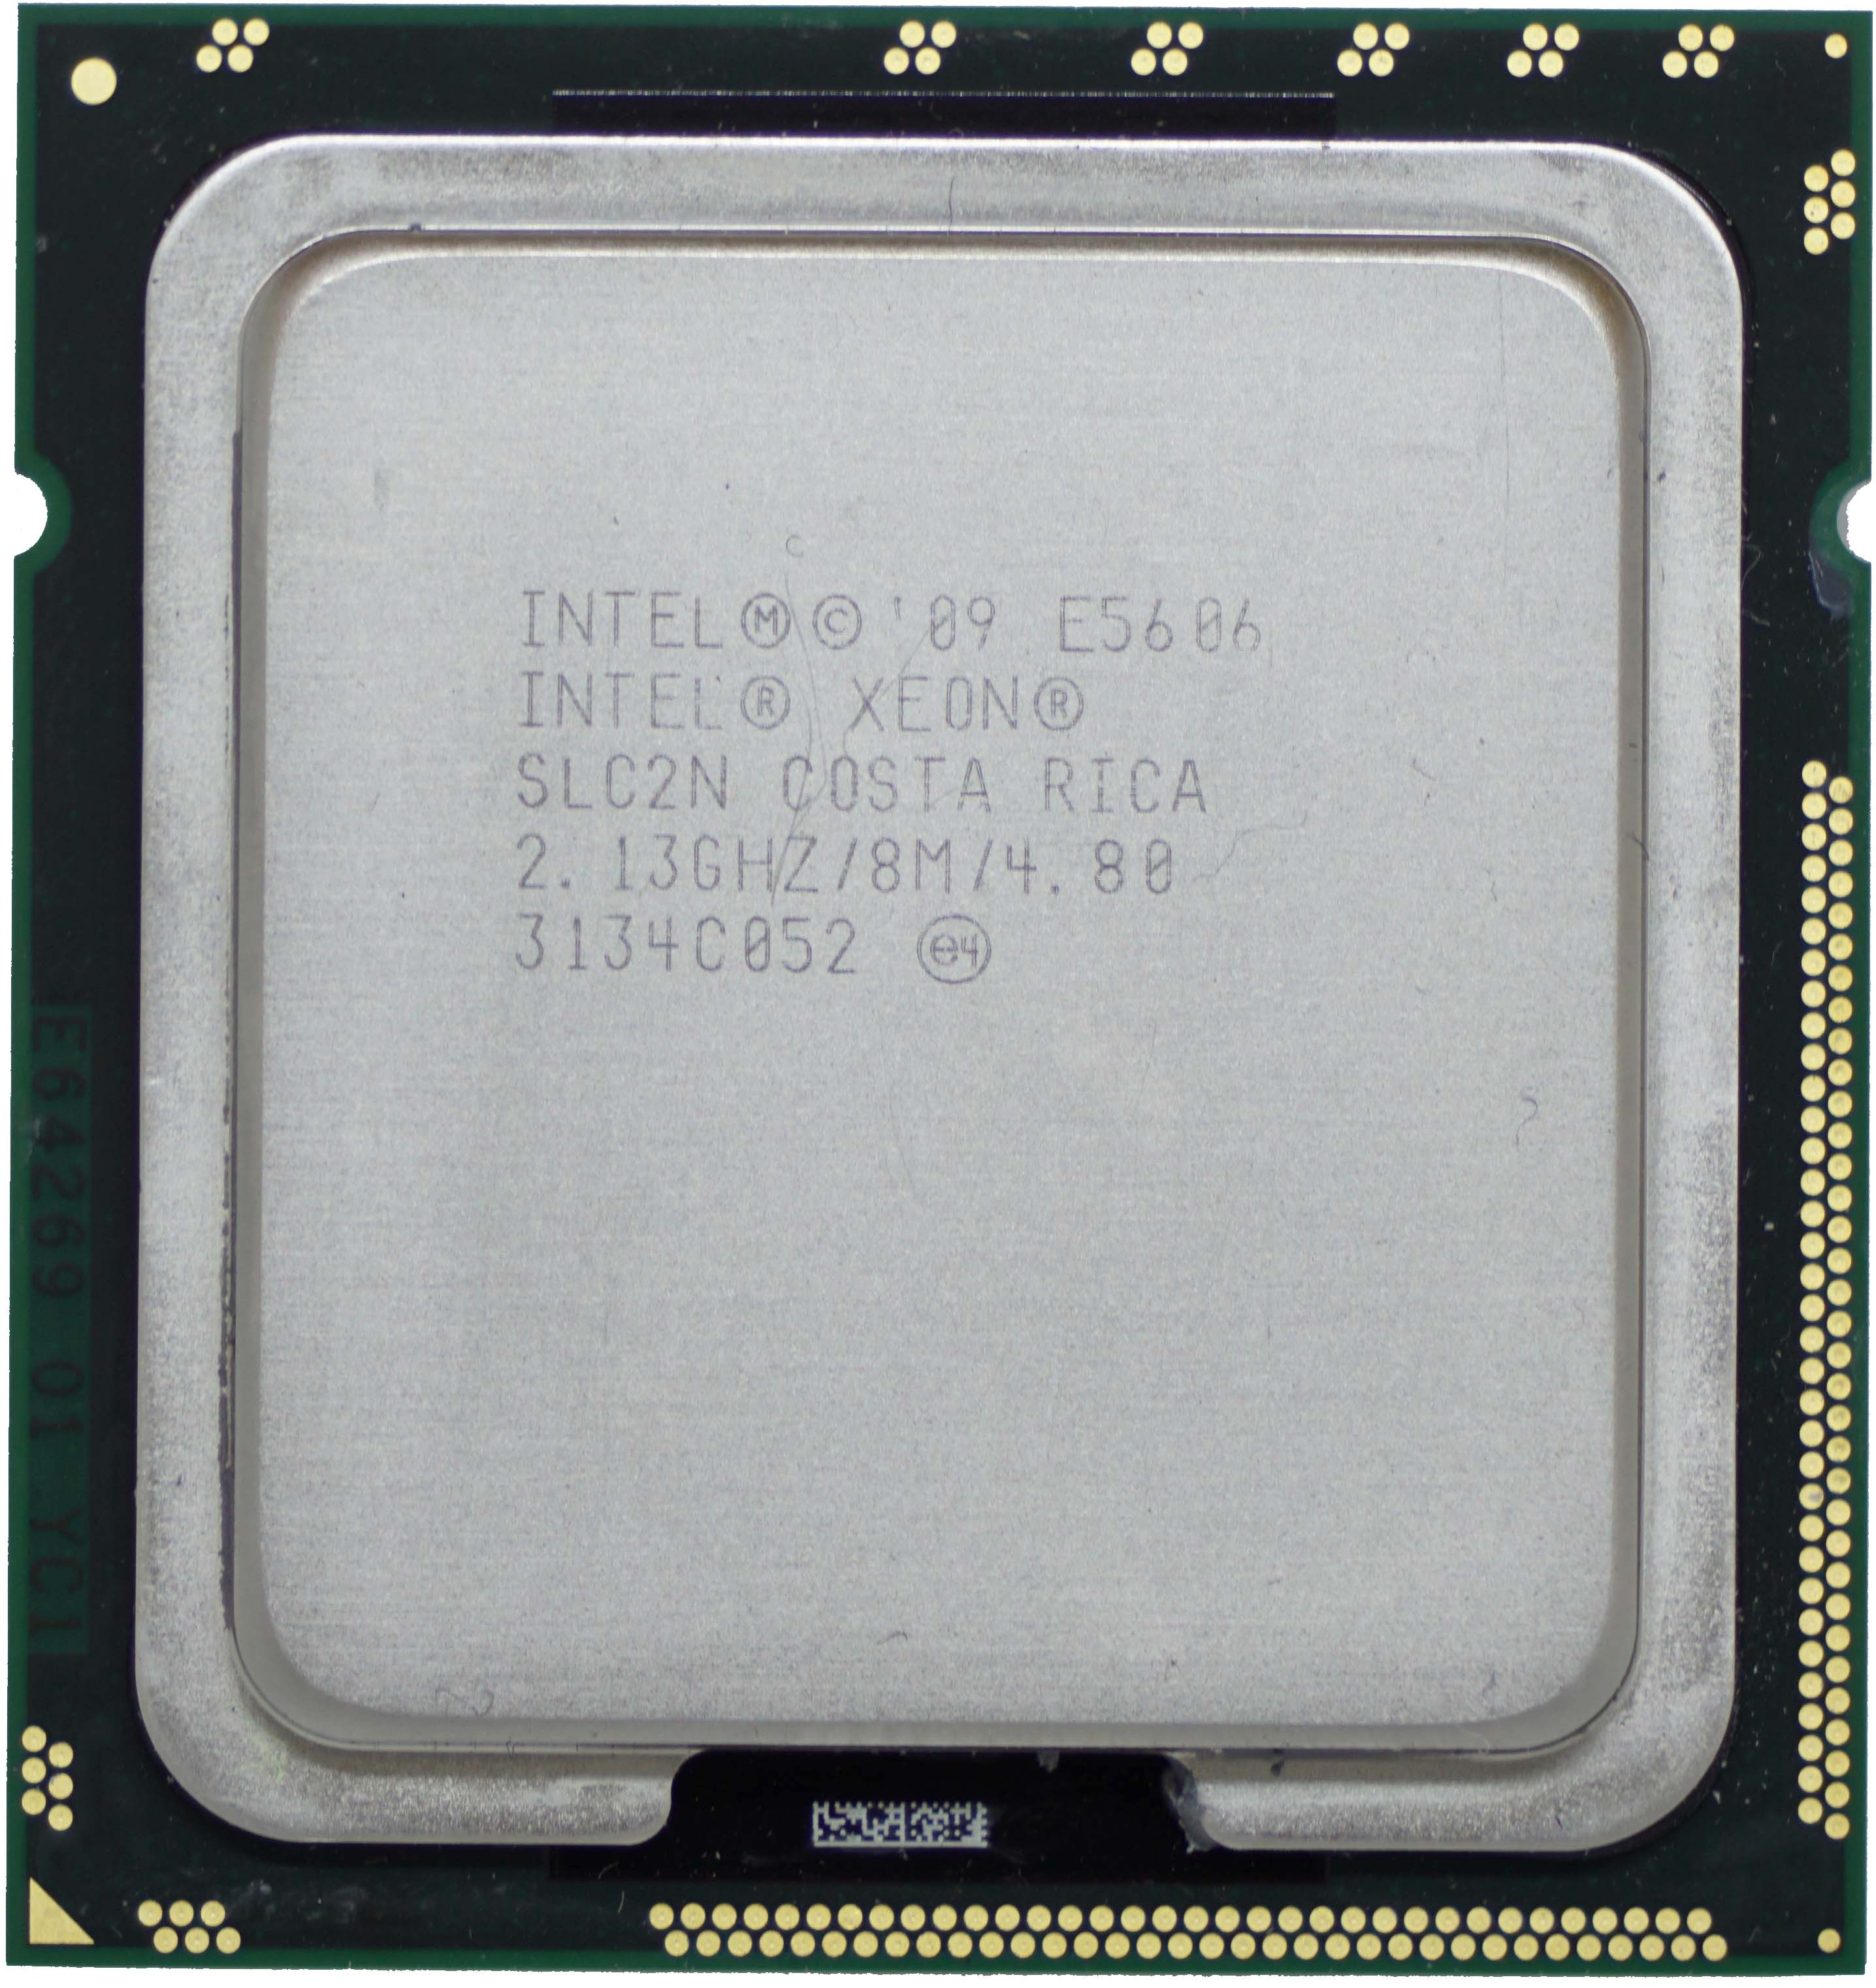 Intel Xeon E5606 (SLC2N) 2.13Ghz Quad (4) Core LGA1366 80W CPU